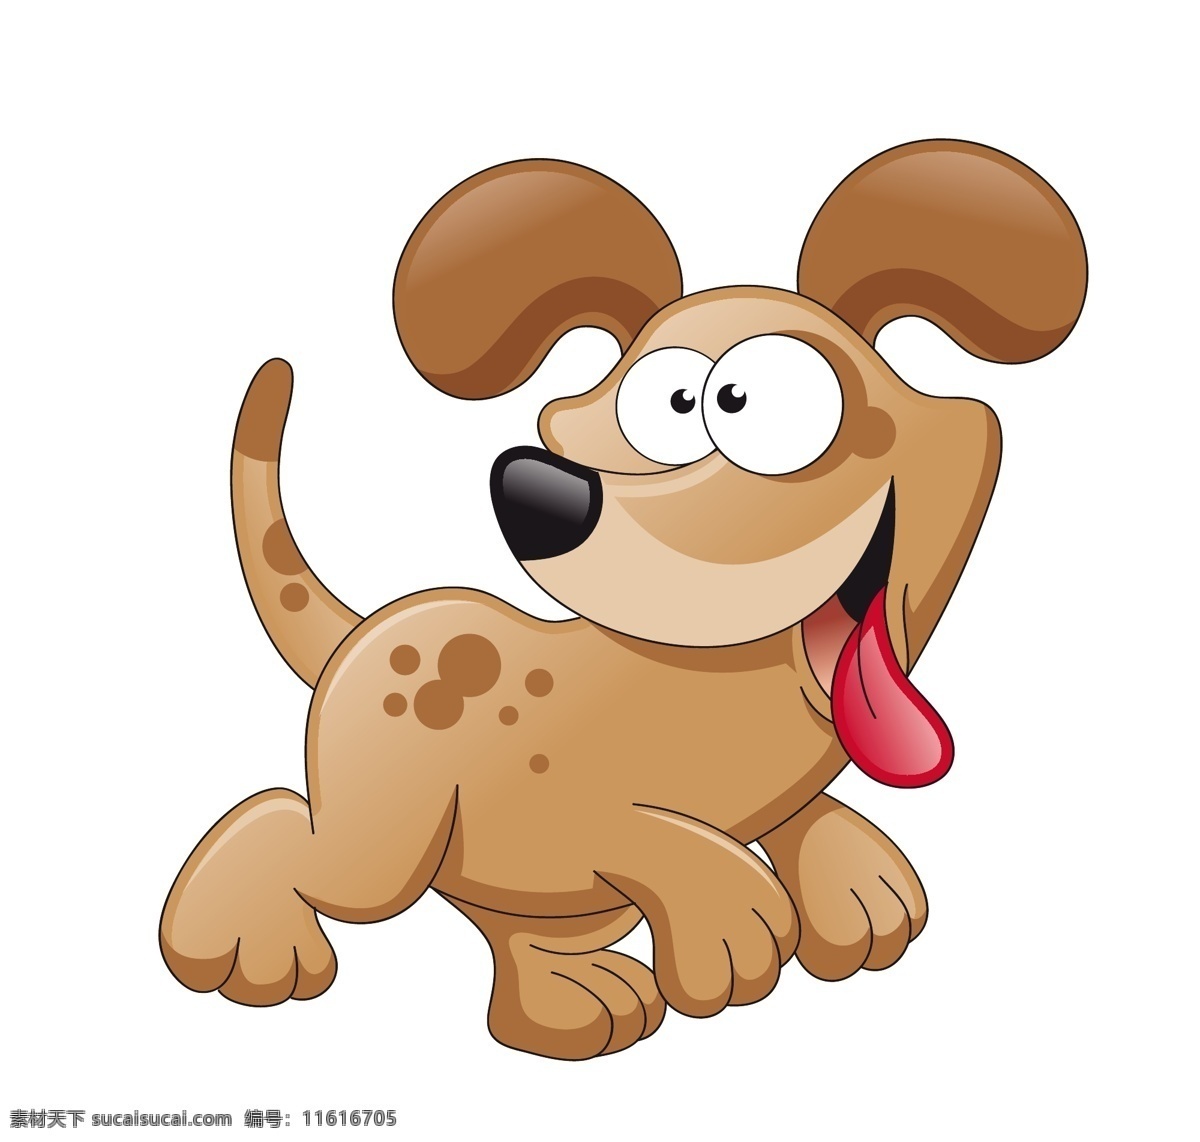 卡通 可爱 小狗 动物 的卡 通 狗 矢量 模板下载 素材图片 可爱的宠物